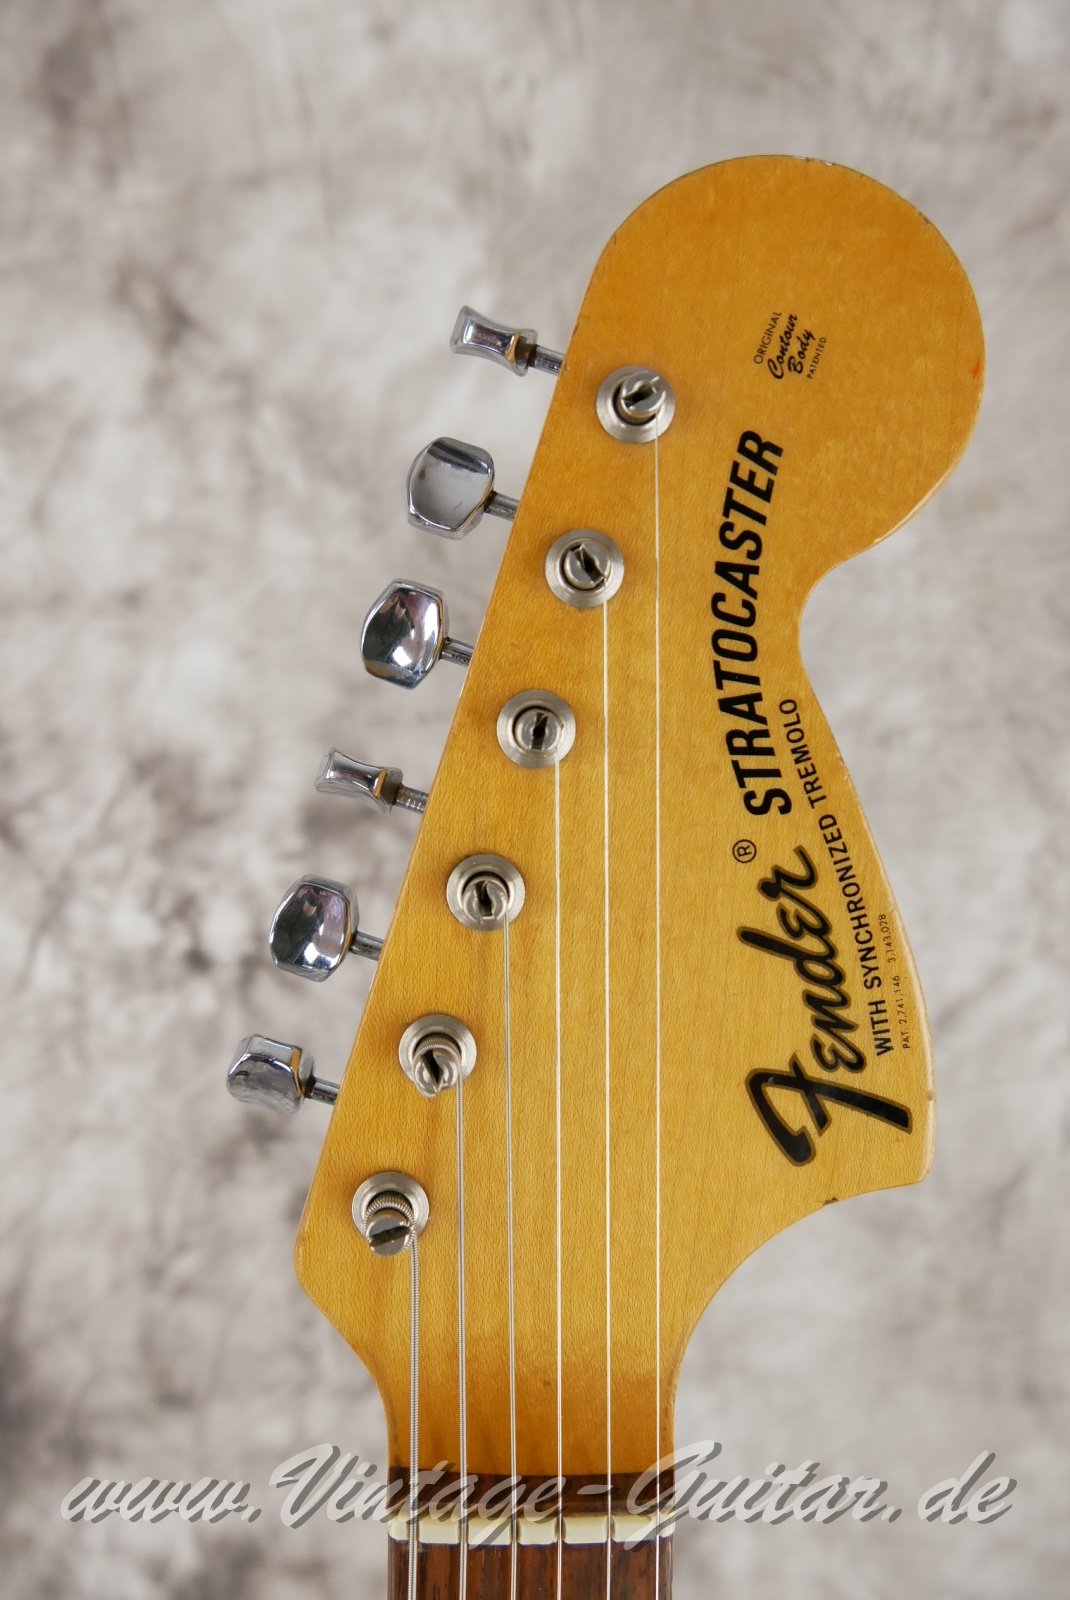 Fender-Stratocaster-1964-body-with-1969-neck-black-003.jpg